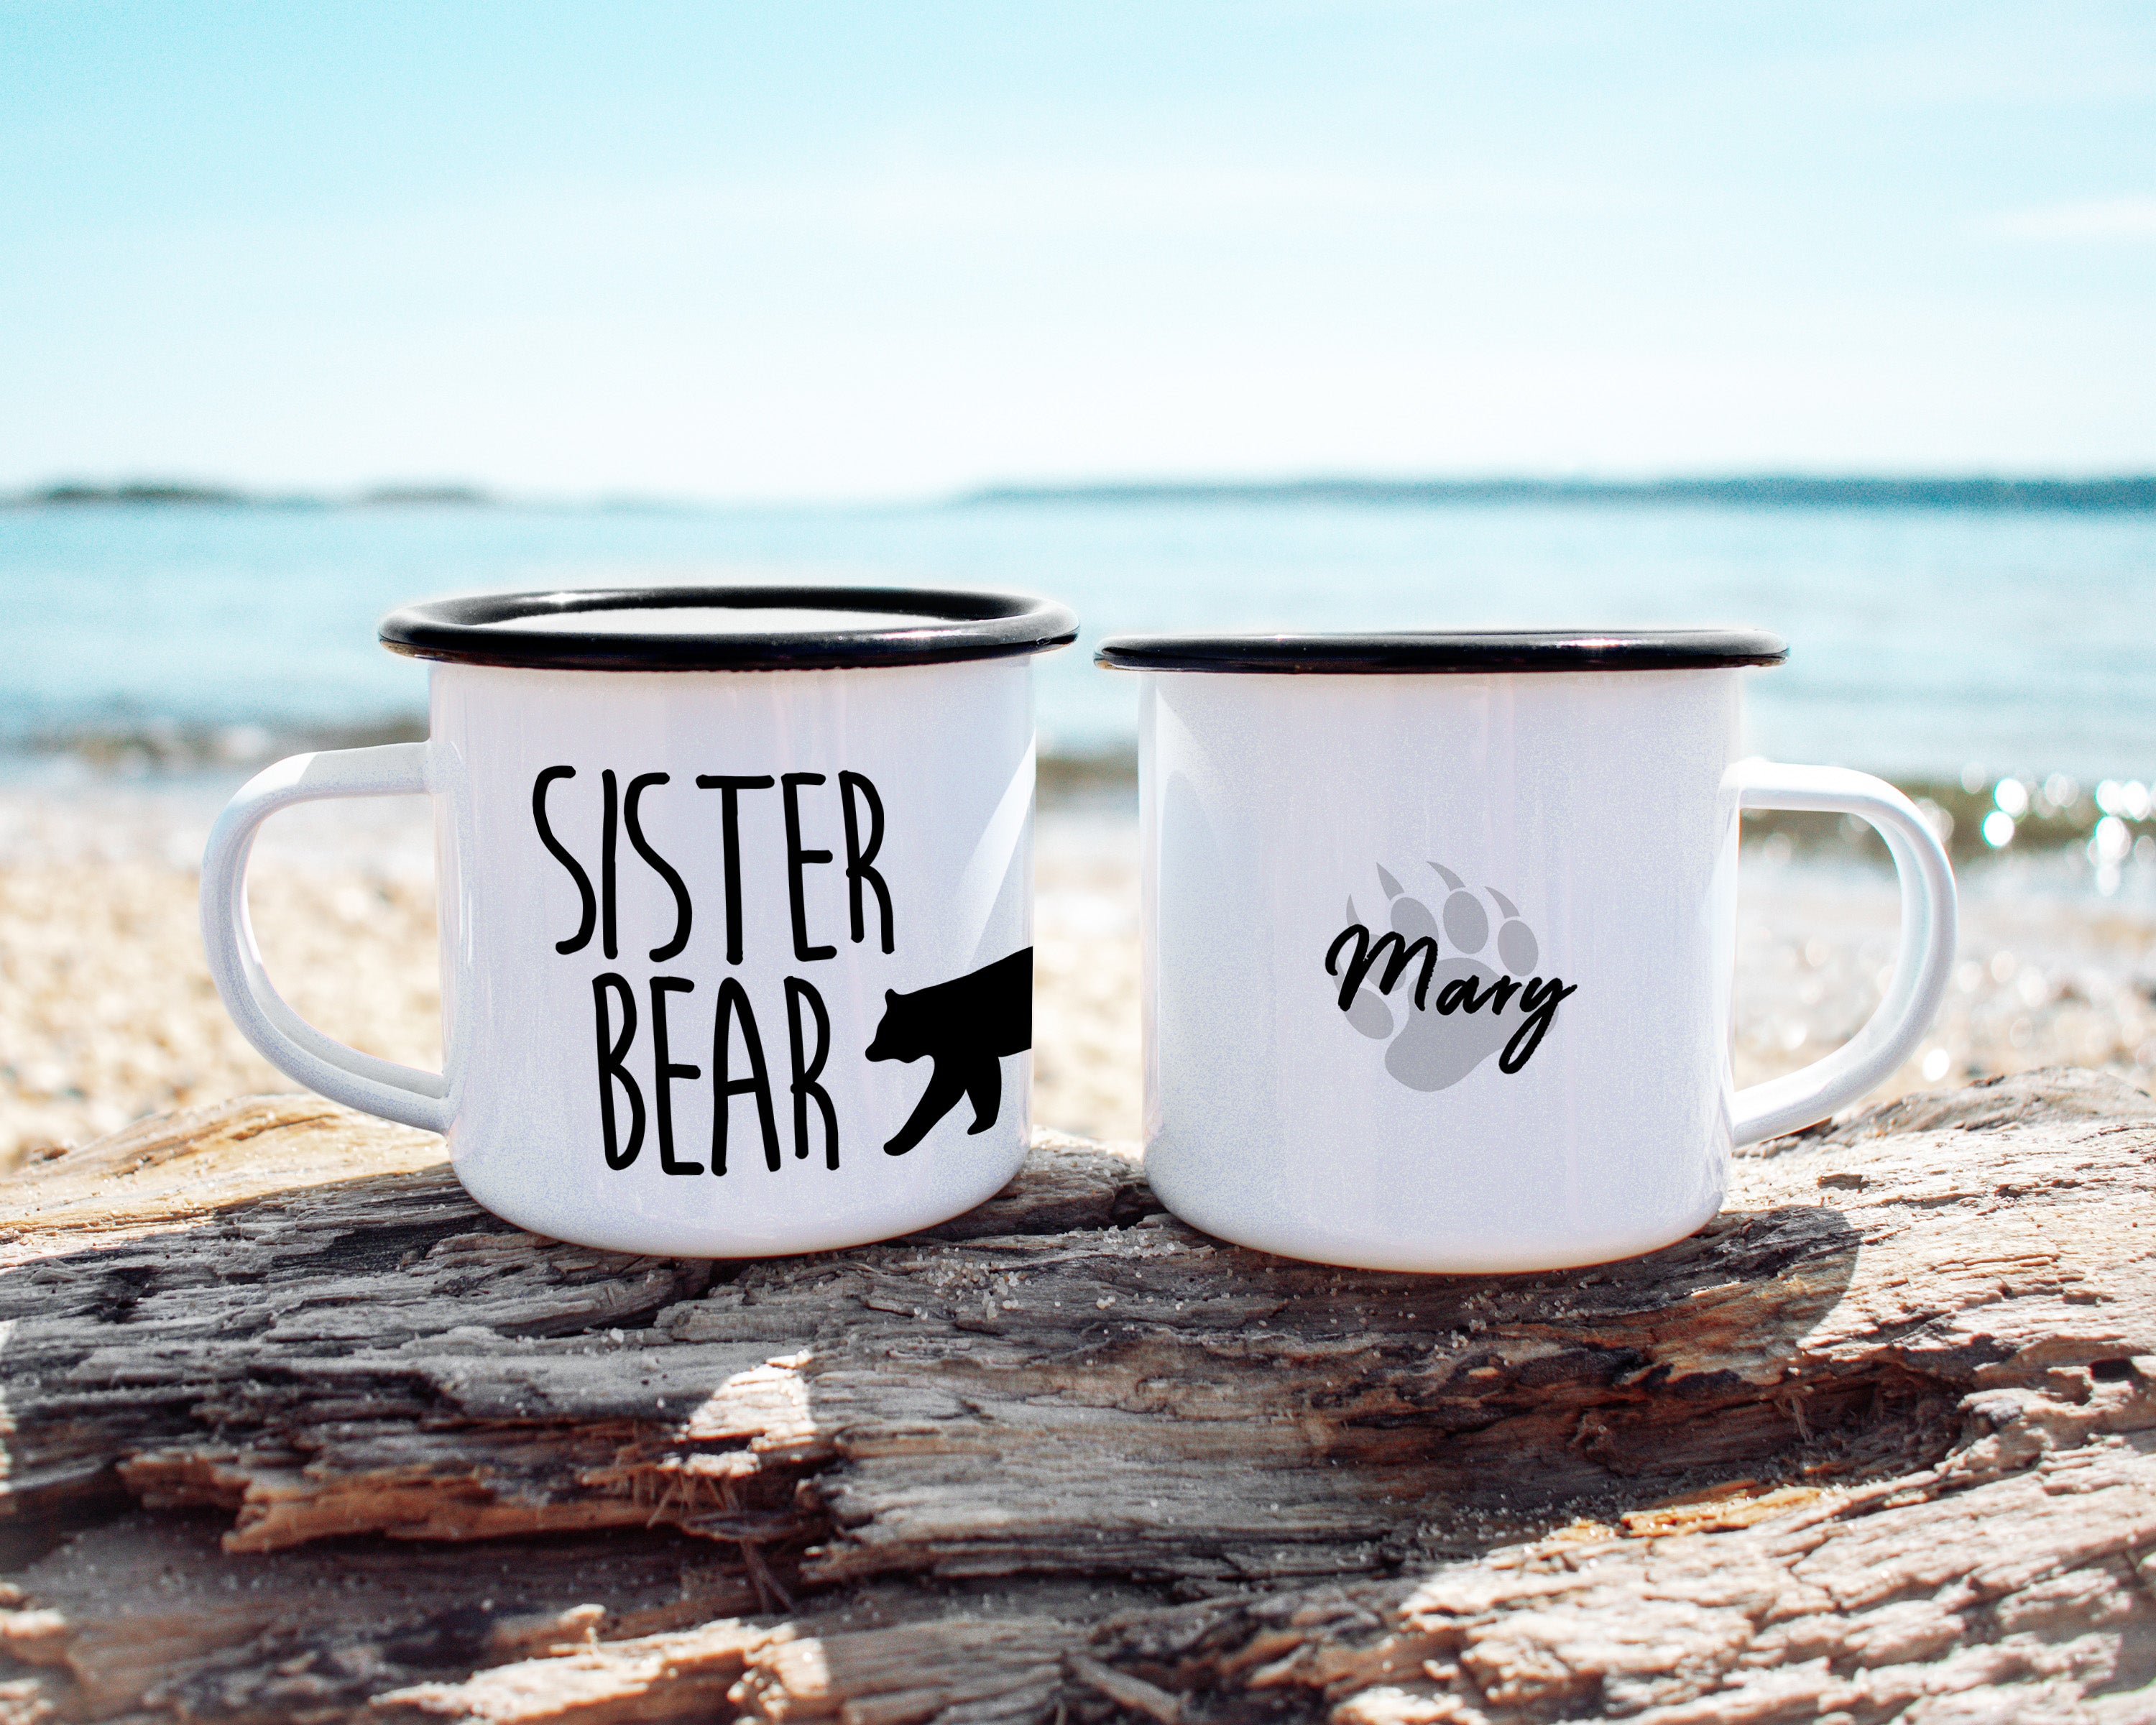 Sister Bear Camp Mug